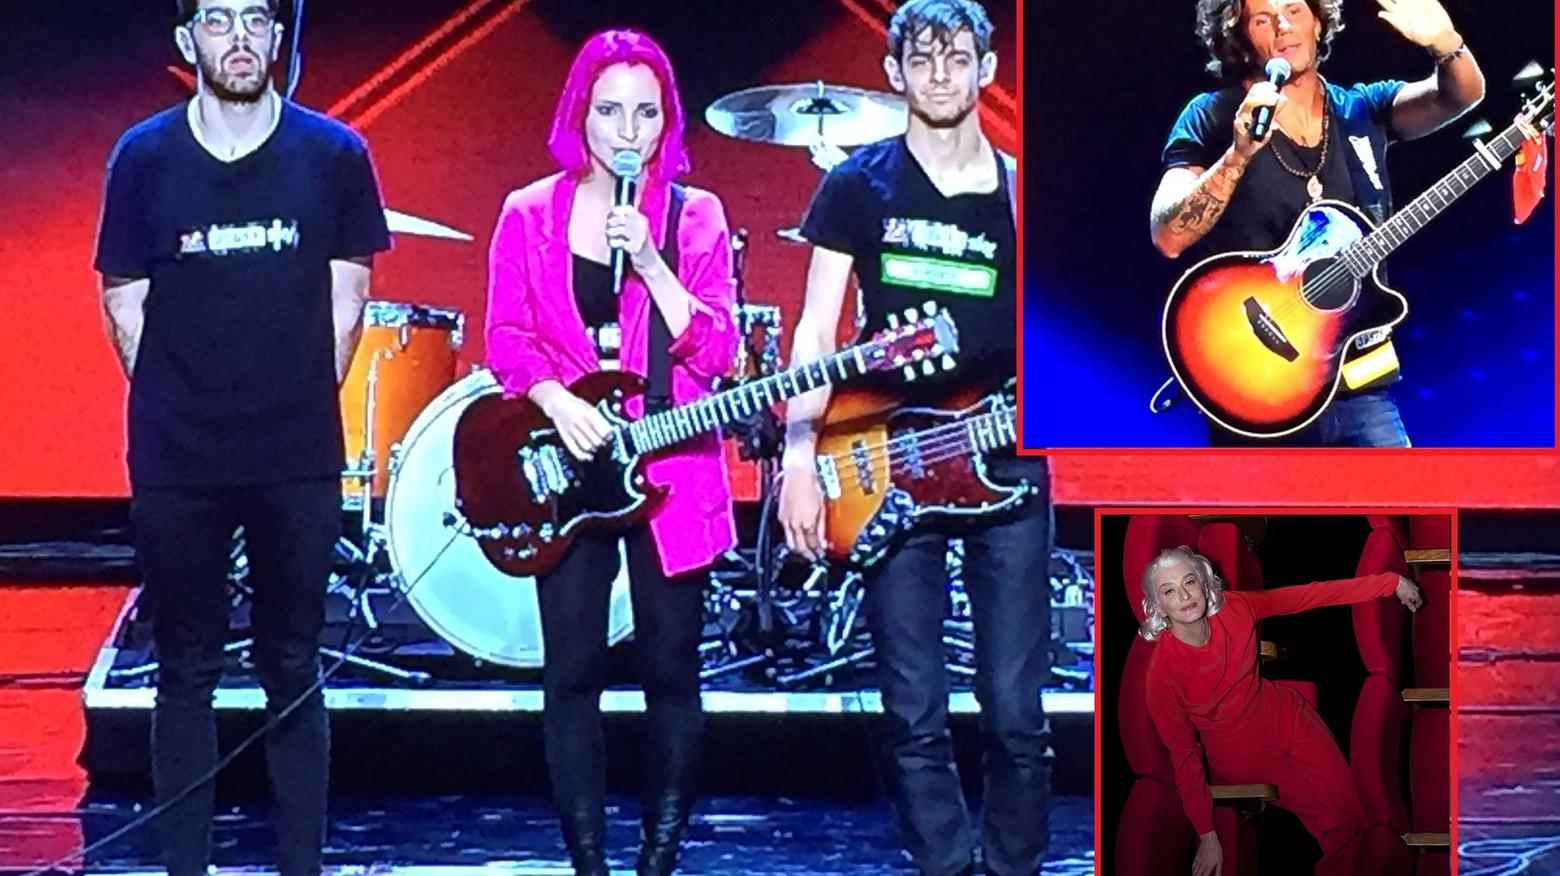 I Ros a X Factor; in alto a destra Enrico Nigiotti, sotto Drusilla Foer